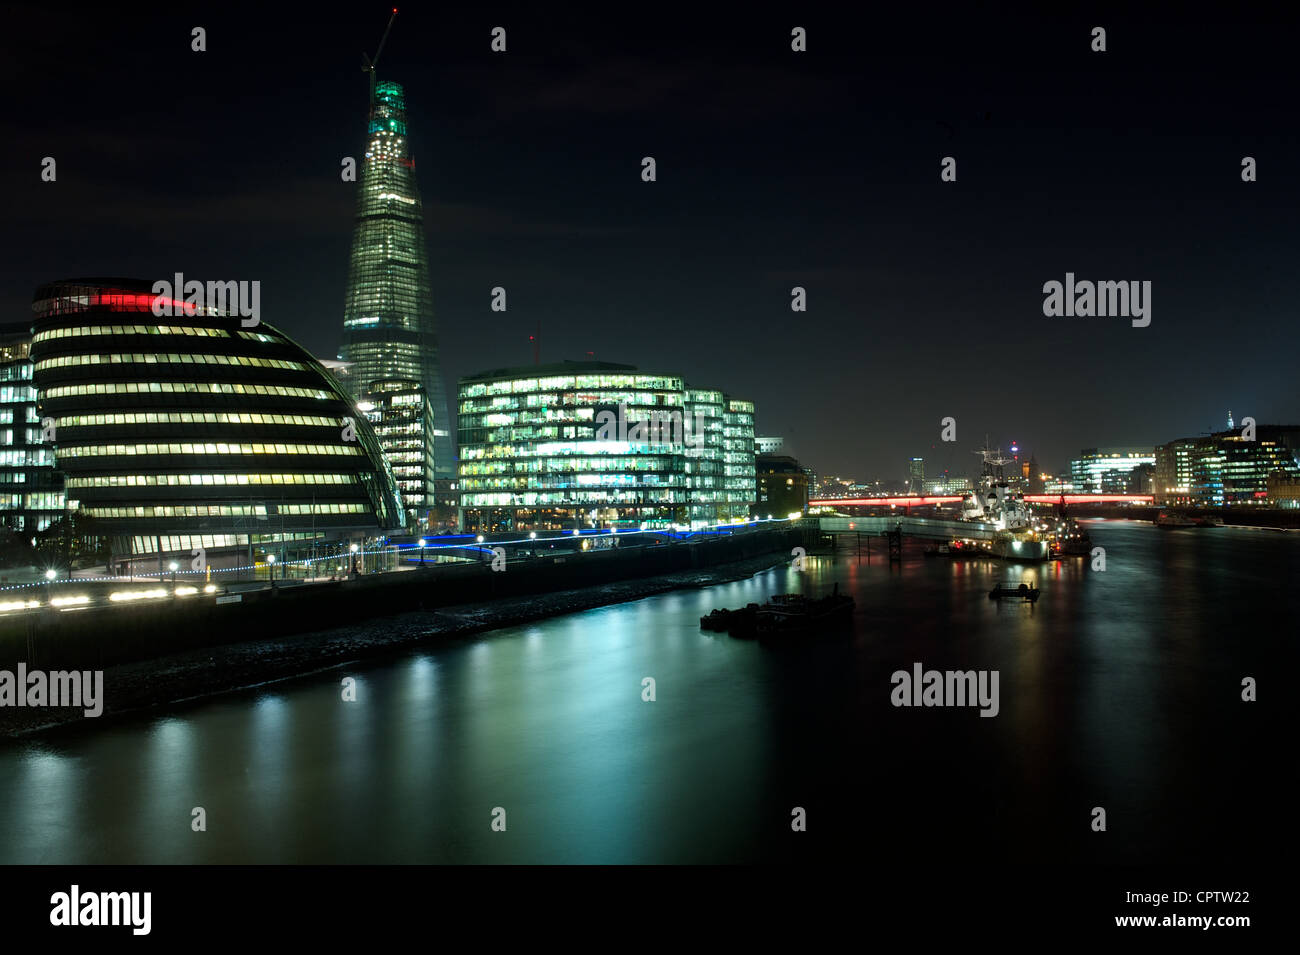 L'hôtel de ville, le Fragment, le HMS Belfast et London Bridge by night avec la Tamise au premier plan, London, UK Banque D'Images